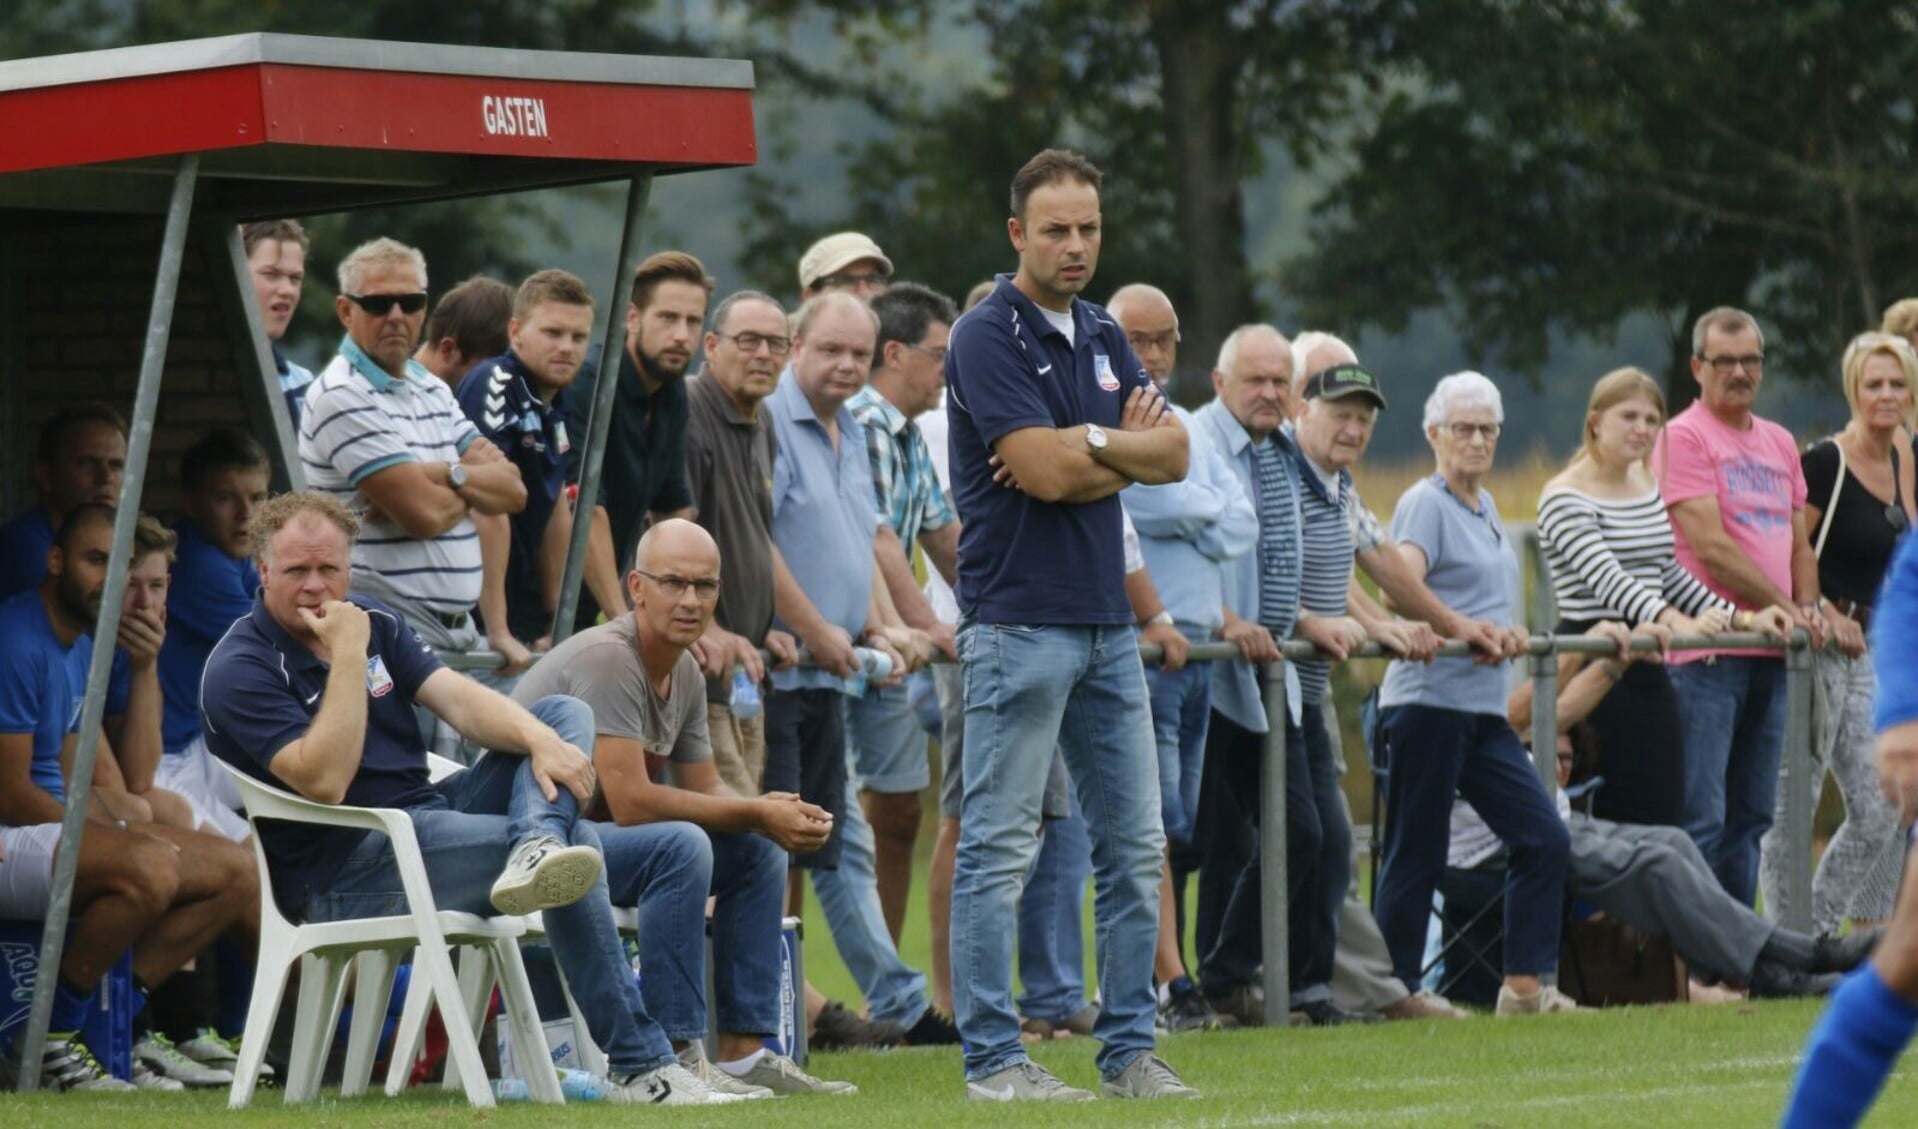 Olympia'18-coach Michel Kuijpers vertrekt komende zomer naar Festilent. (foto: Bas Delhij)